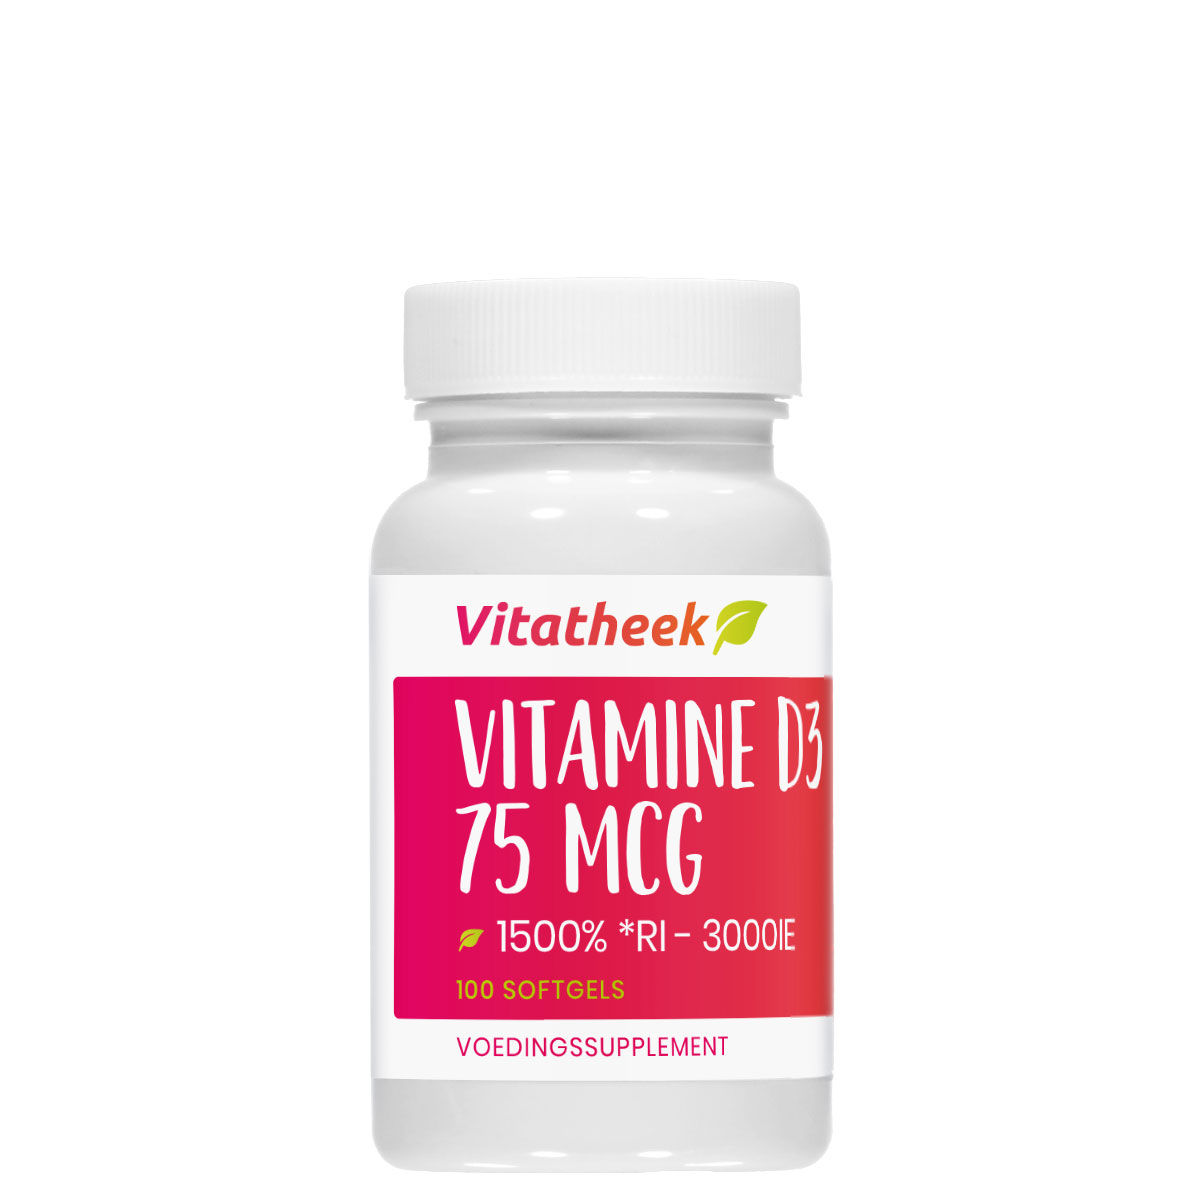 Vitamine D3 75Mcg